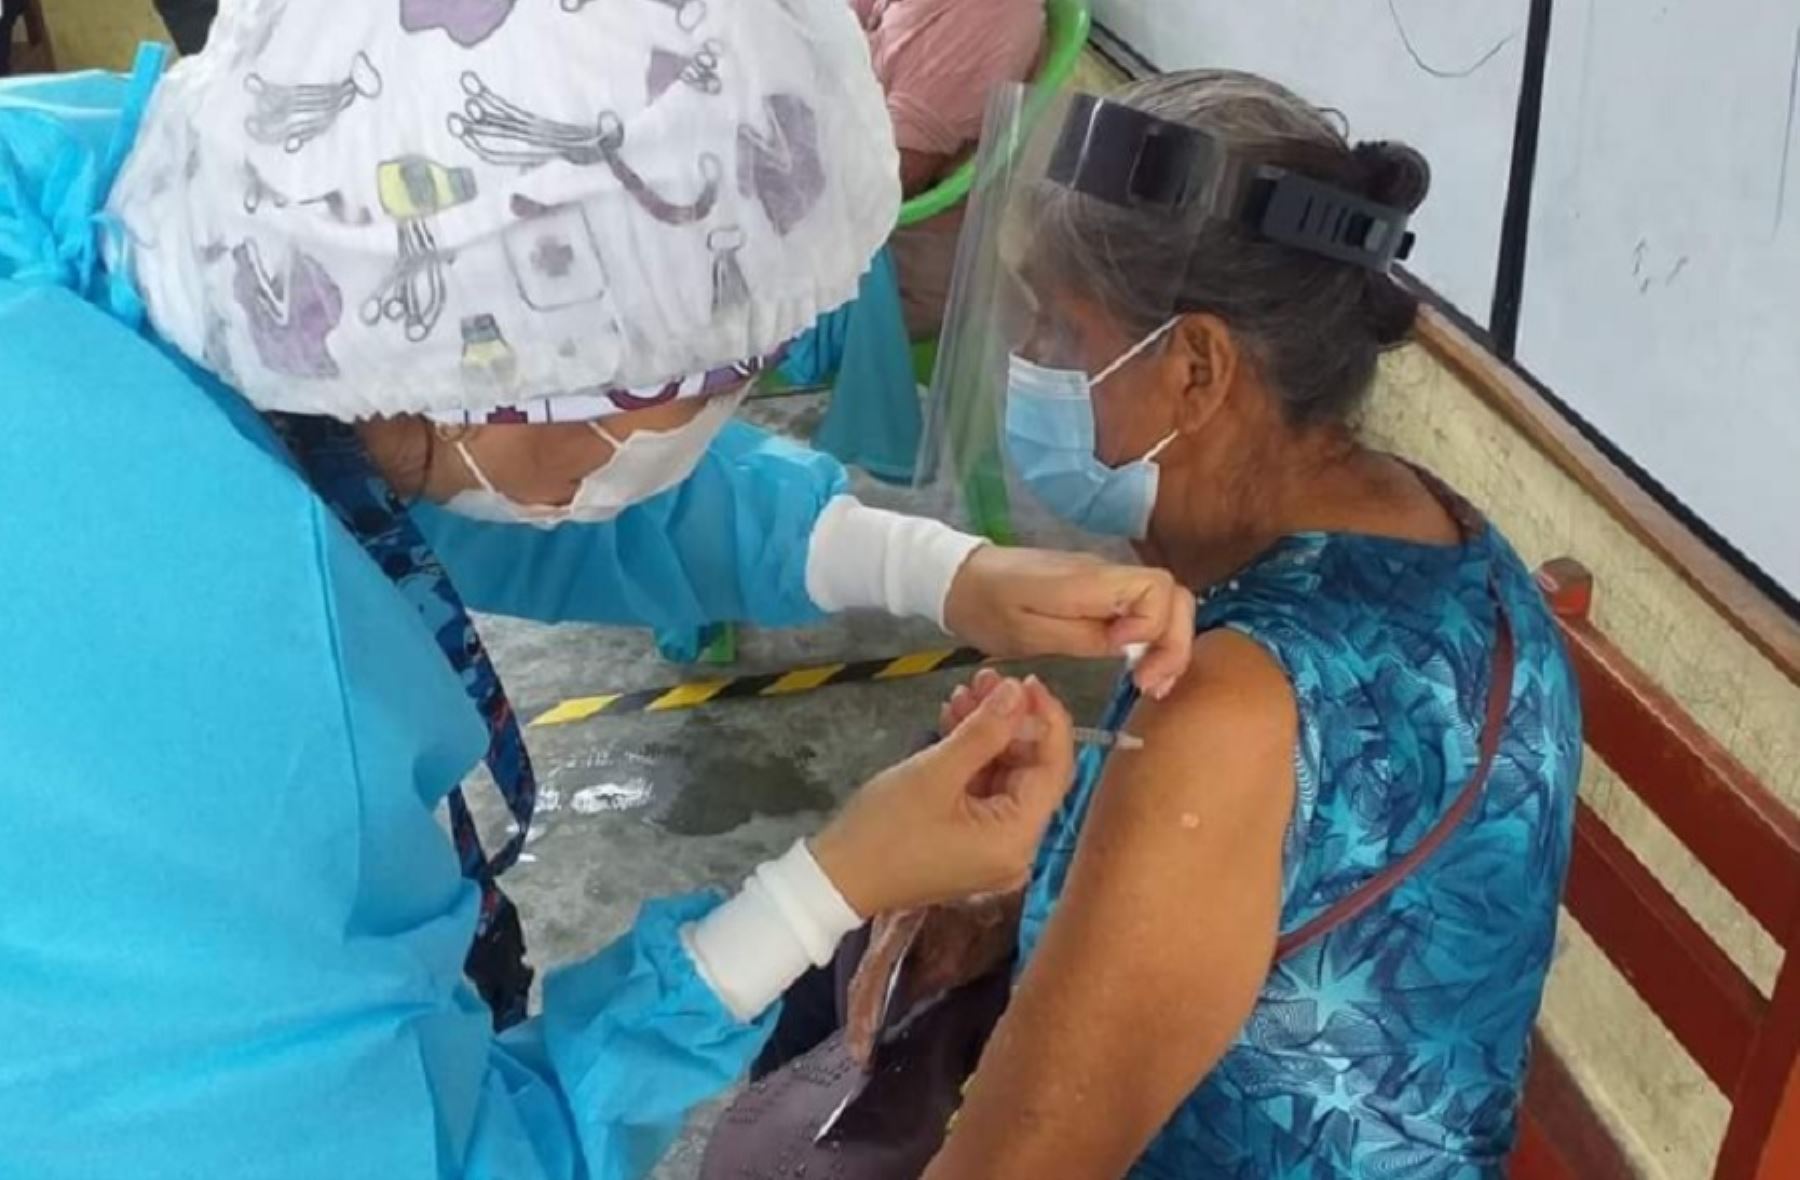 La región San Martín puso en marcha la campaña “Vacúnate Cho”, que tiene como objetivo promover la inmunización contra el covid-19, sus ventajas y su gratuidad, mediante una intensa campaña de comunicación.